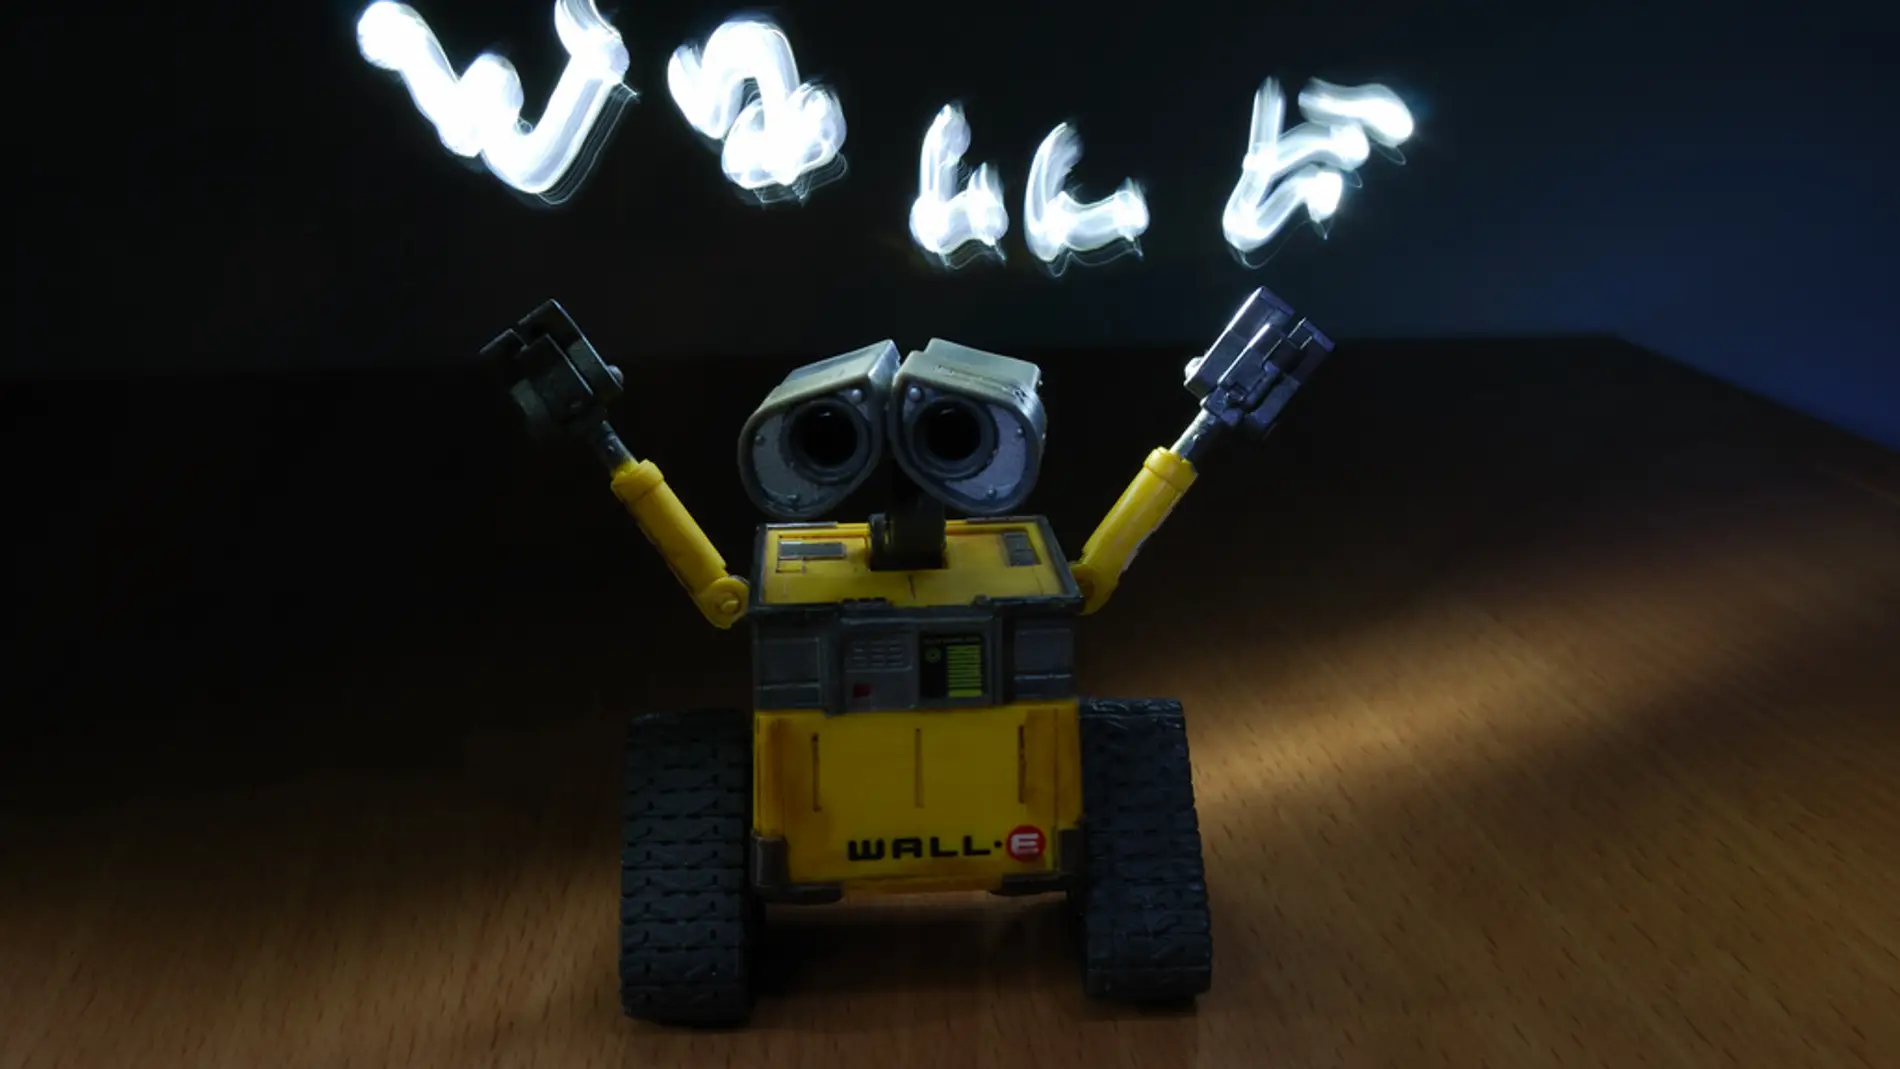 Wall-e